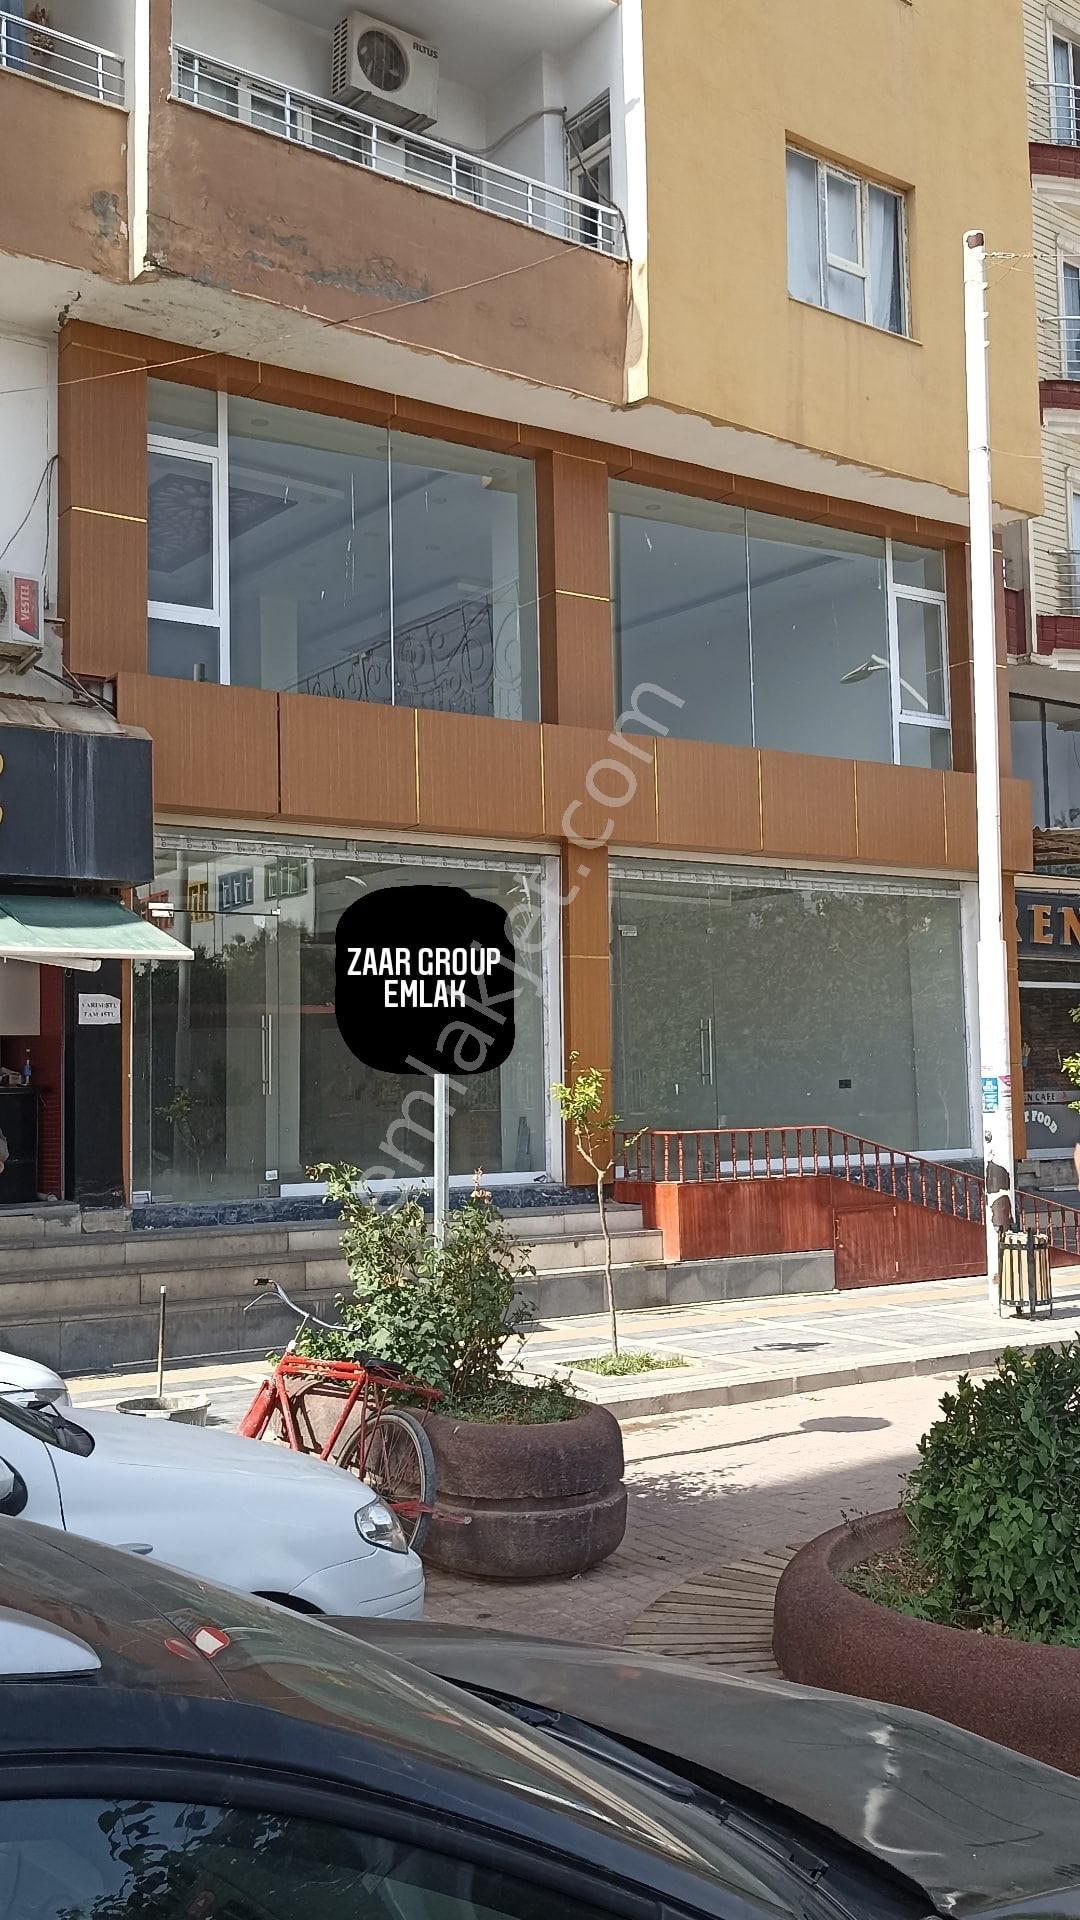 Kızıltepe Tepebaşı Satılık Dükkan & Mağaza işletmeye hazır halı desenli caddede satılık dükkan işyeri asma katlı